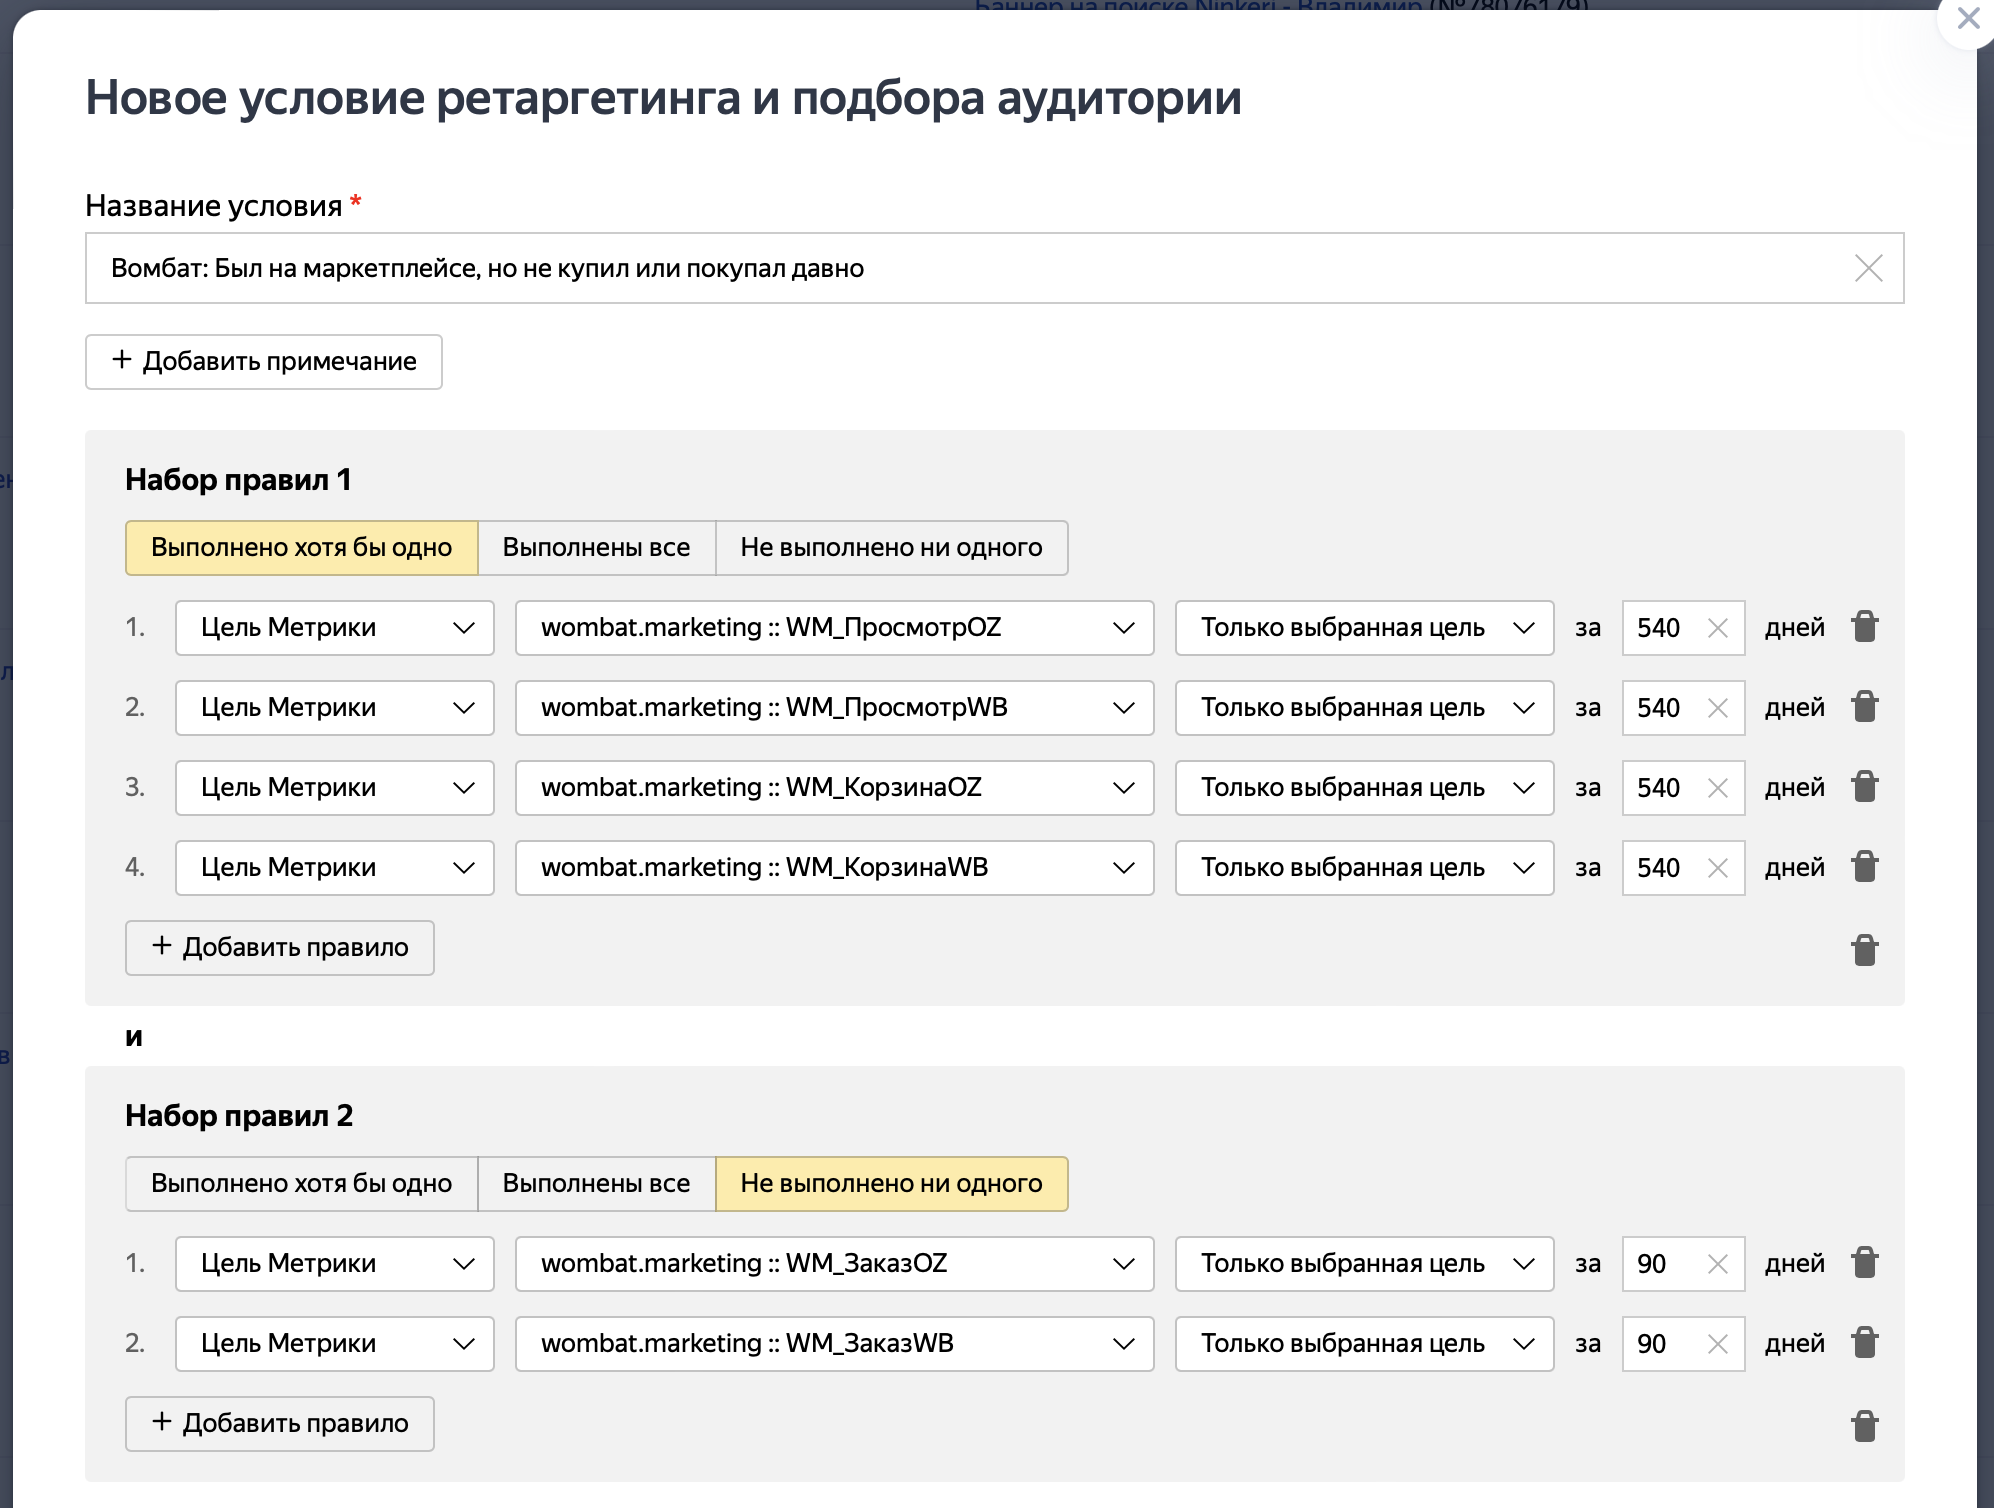 Аудитория для ретаргетинга рекламы в Яндекс Директ товаров на Вайлдберриз и Озон